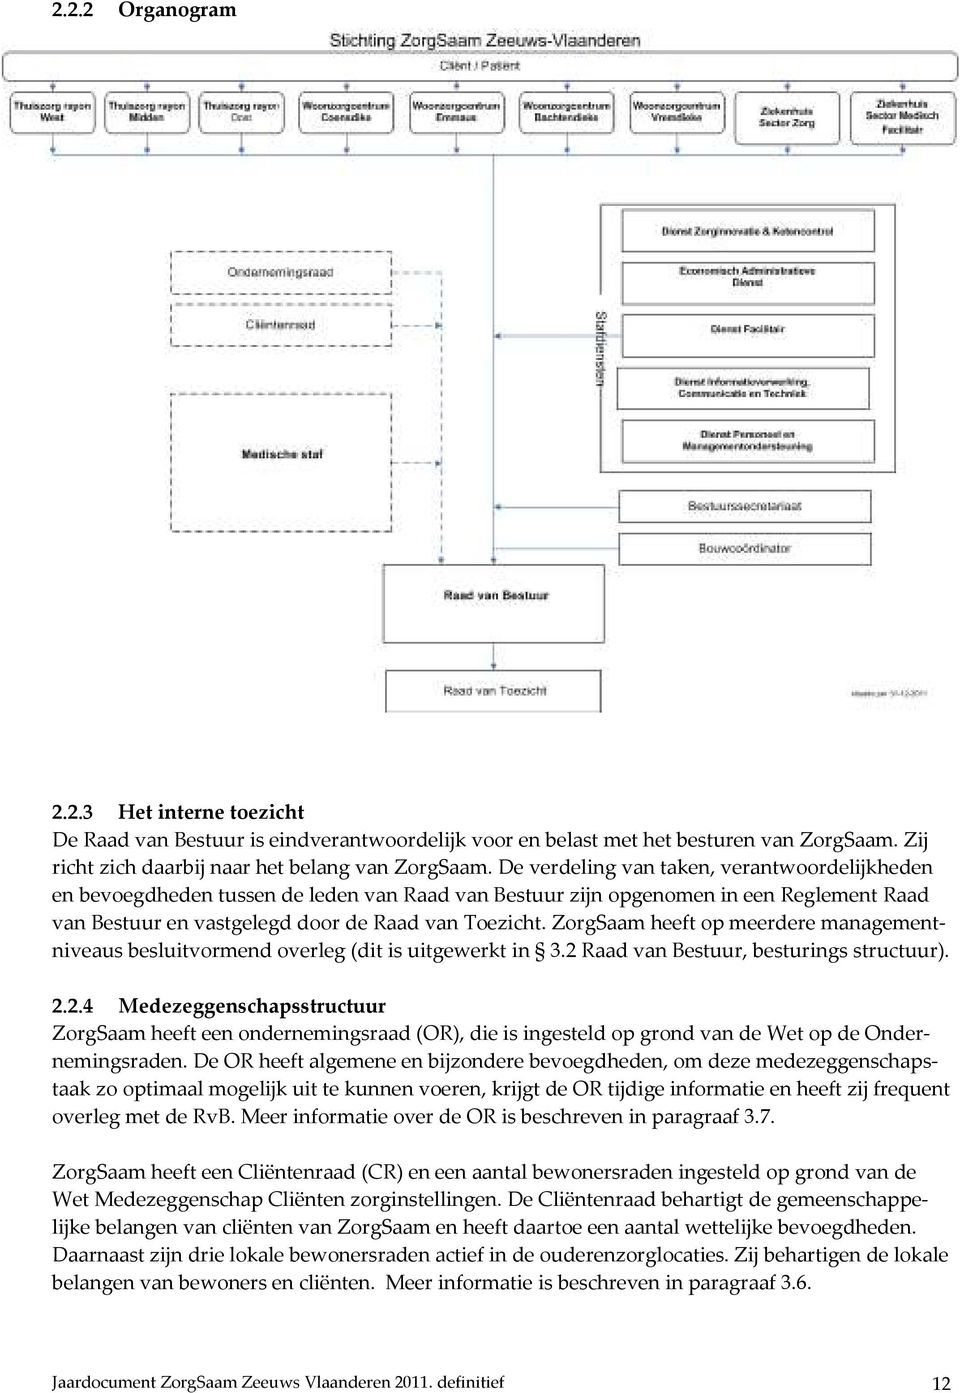 ZorgSaam heeft op meerdere managementniveaus besluitvormend overleg (dit is uitgewerkt in 3.2 